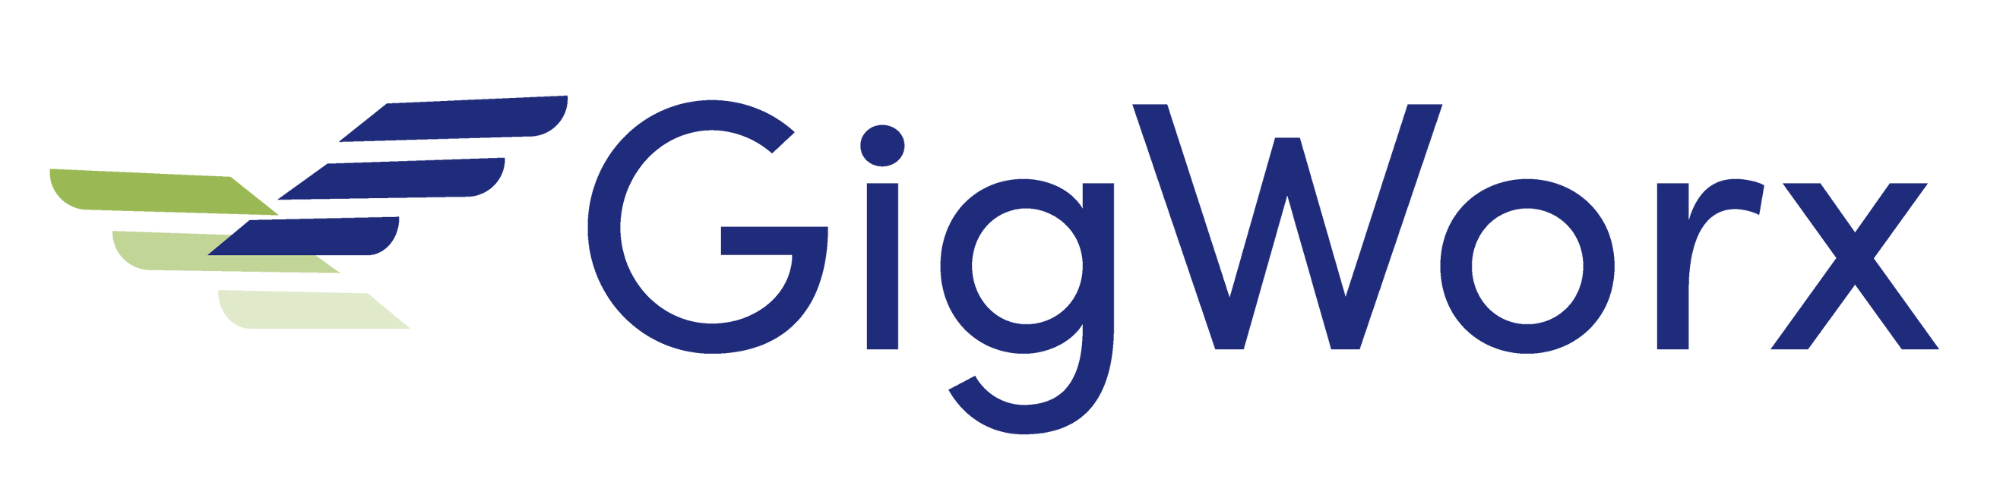 GigWorx logo